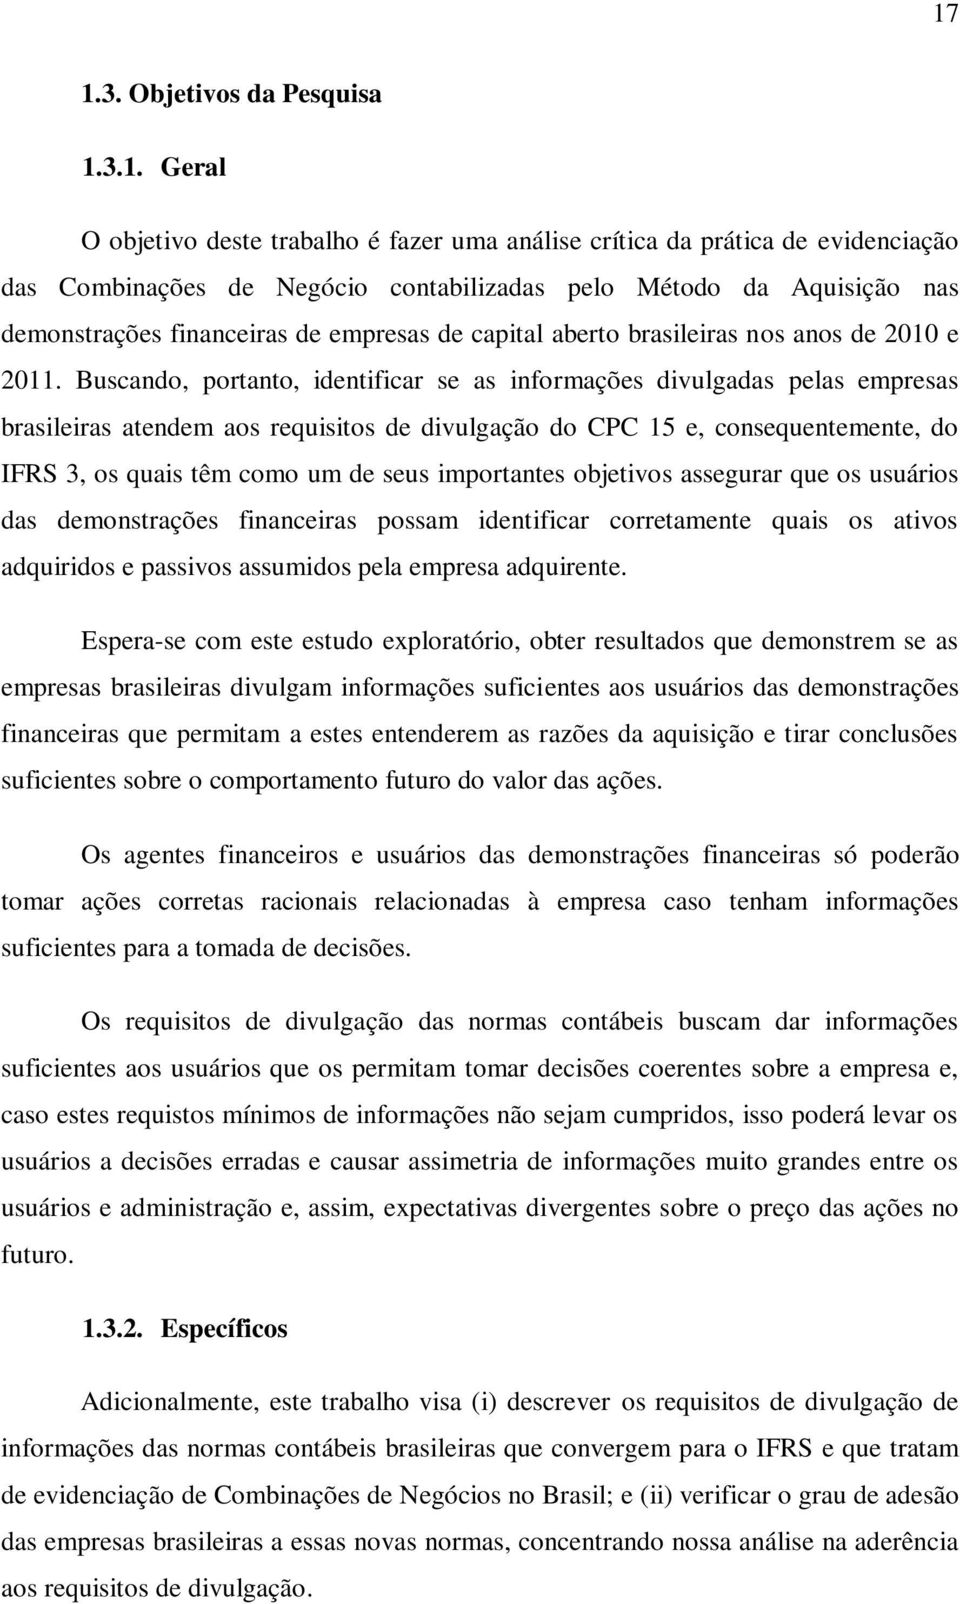 Buscando, portanto, identificar se as informações divulgadas pelas empresas brasileiras atendem aos requisitos de divulgação do CPC 15 e, consequentemente, do IFRS 3, os quais têm como um de seus